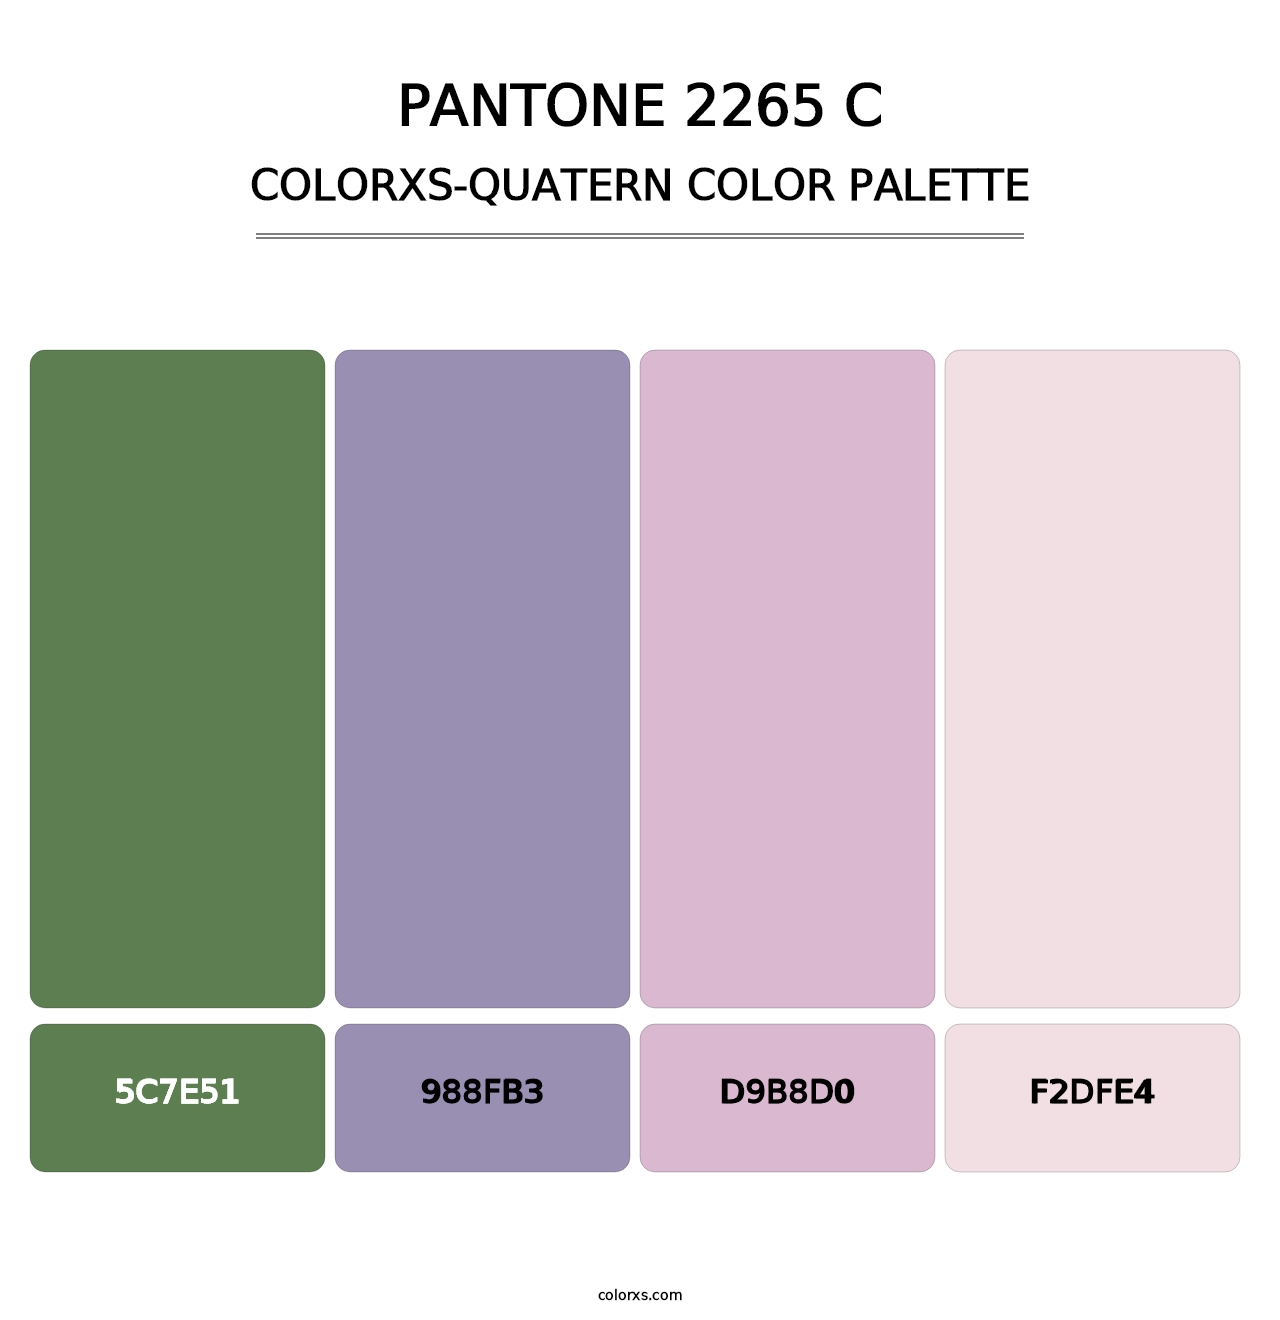 PANTONE 2265 C - Colorxs Quatern Palette